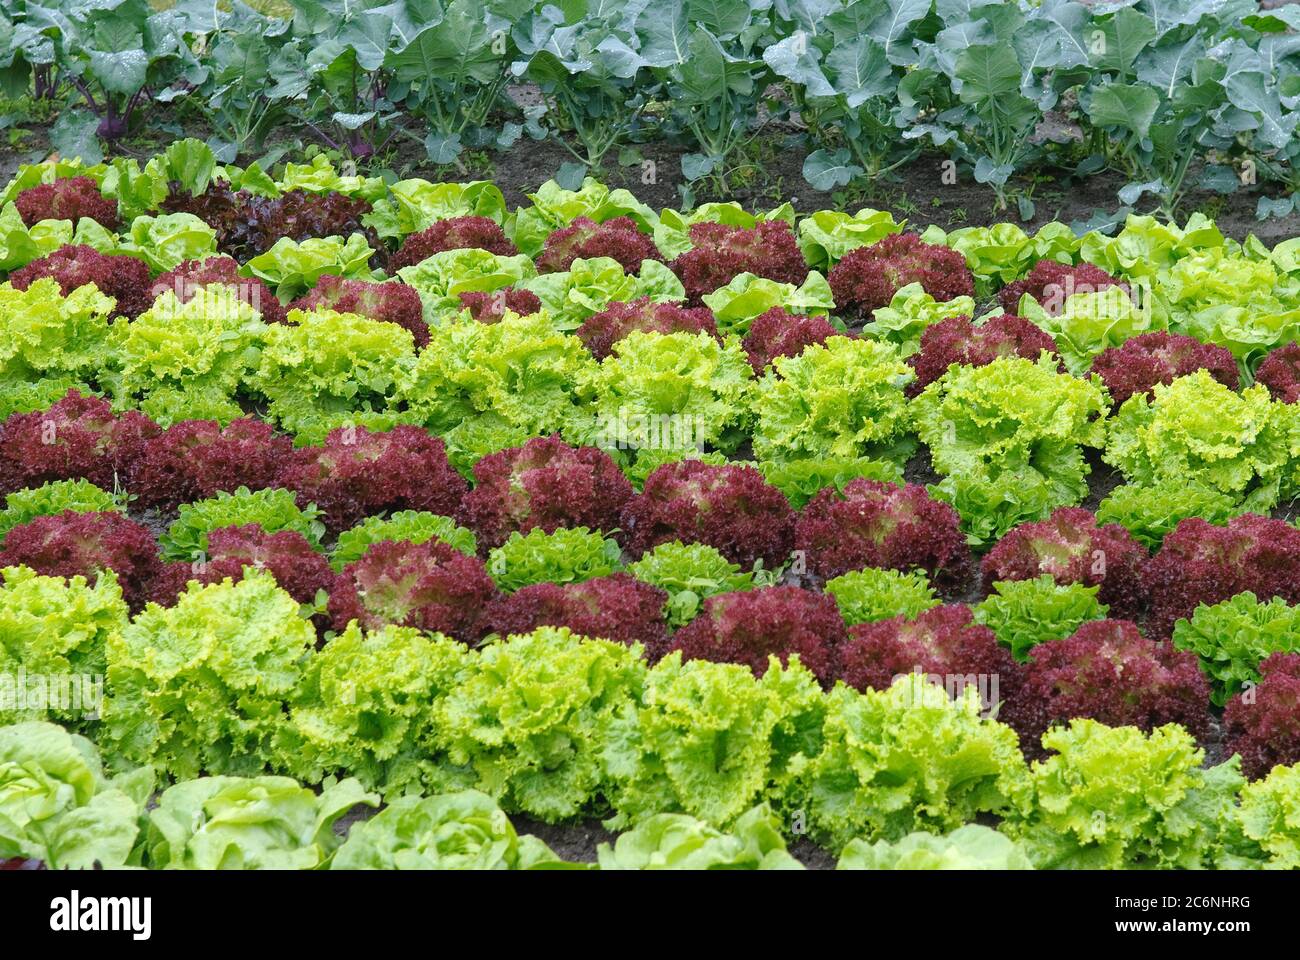 Schnittsalat Lactuca sativa Lollo rosso, Leaf lettuce Lactuca sativa Lollo rosso Stock Photo